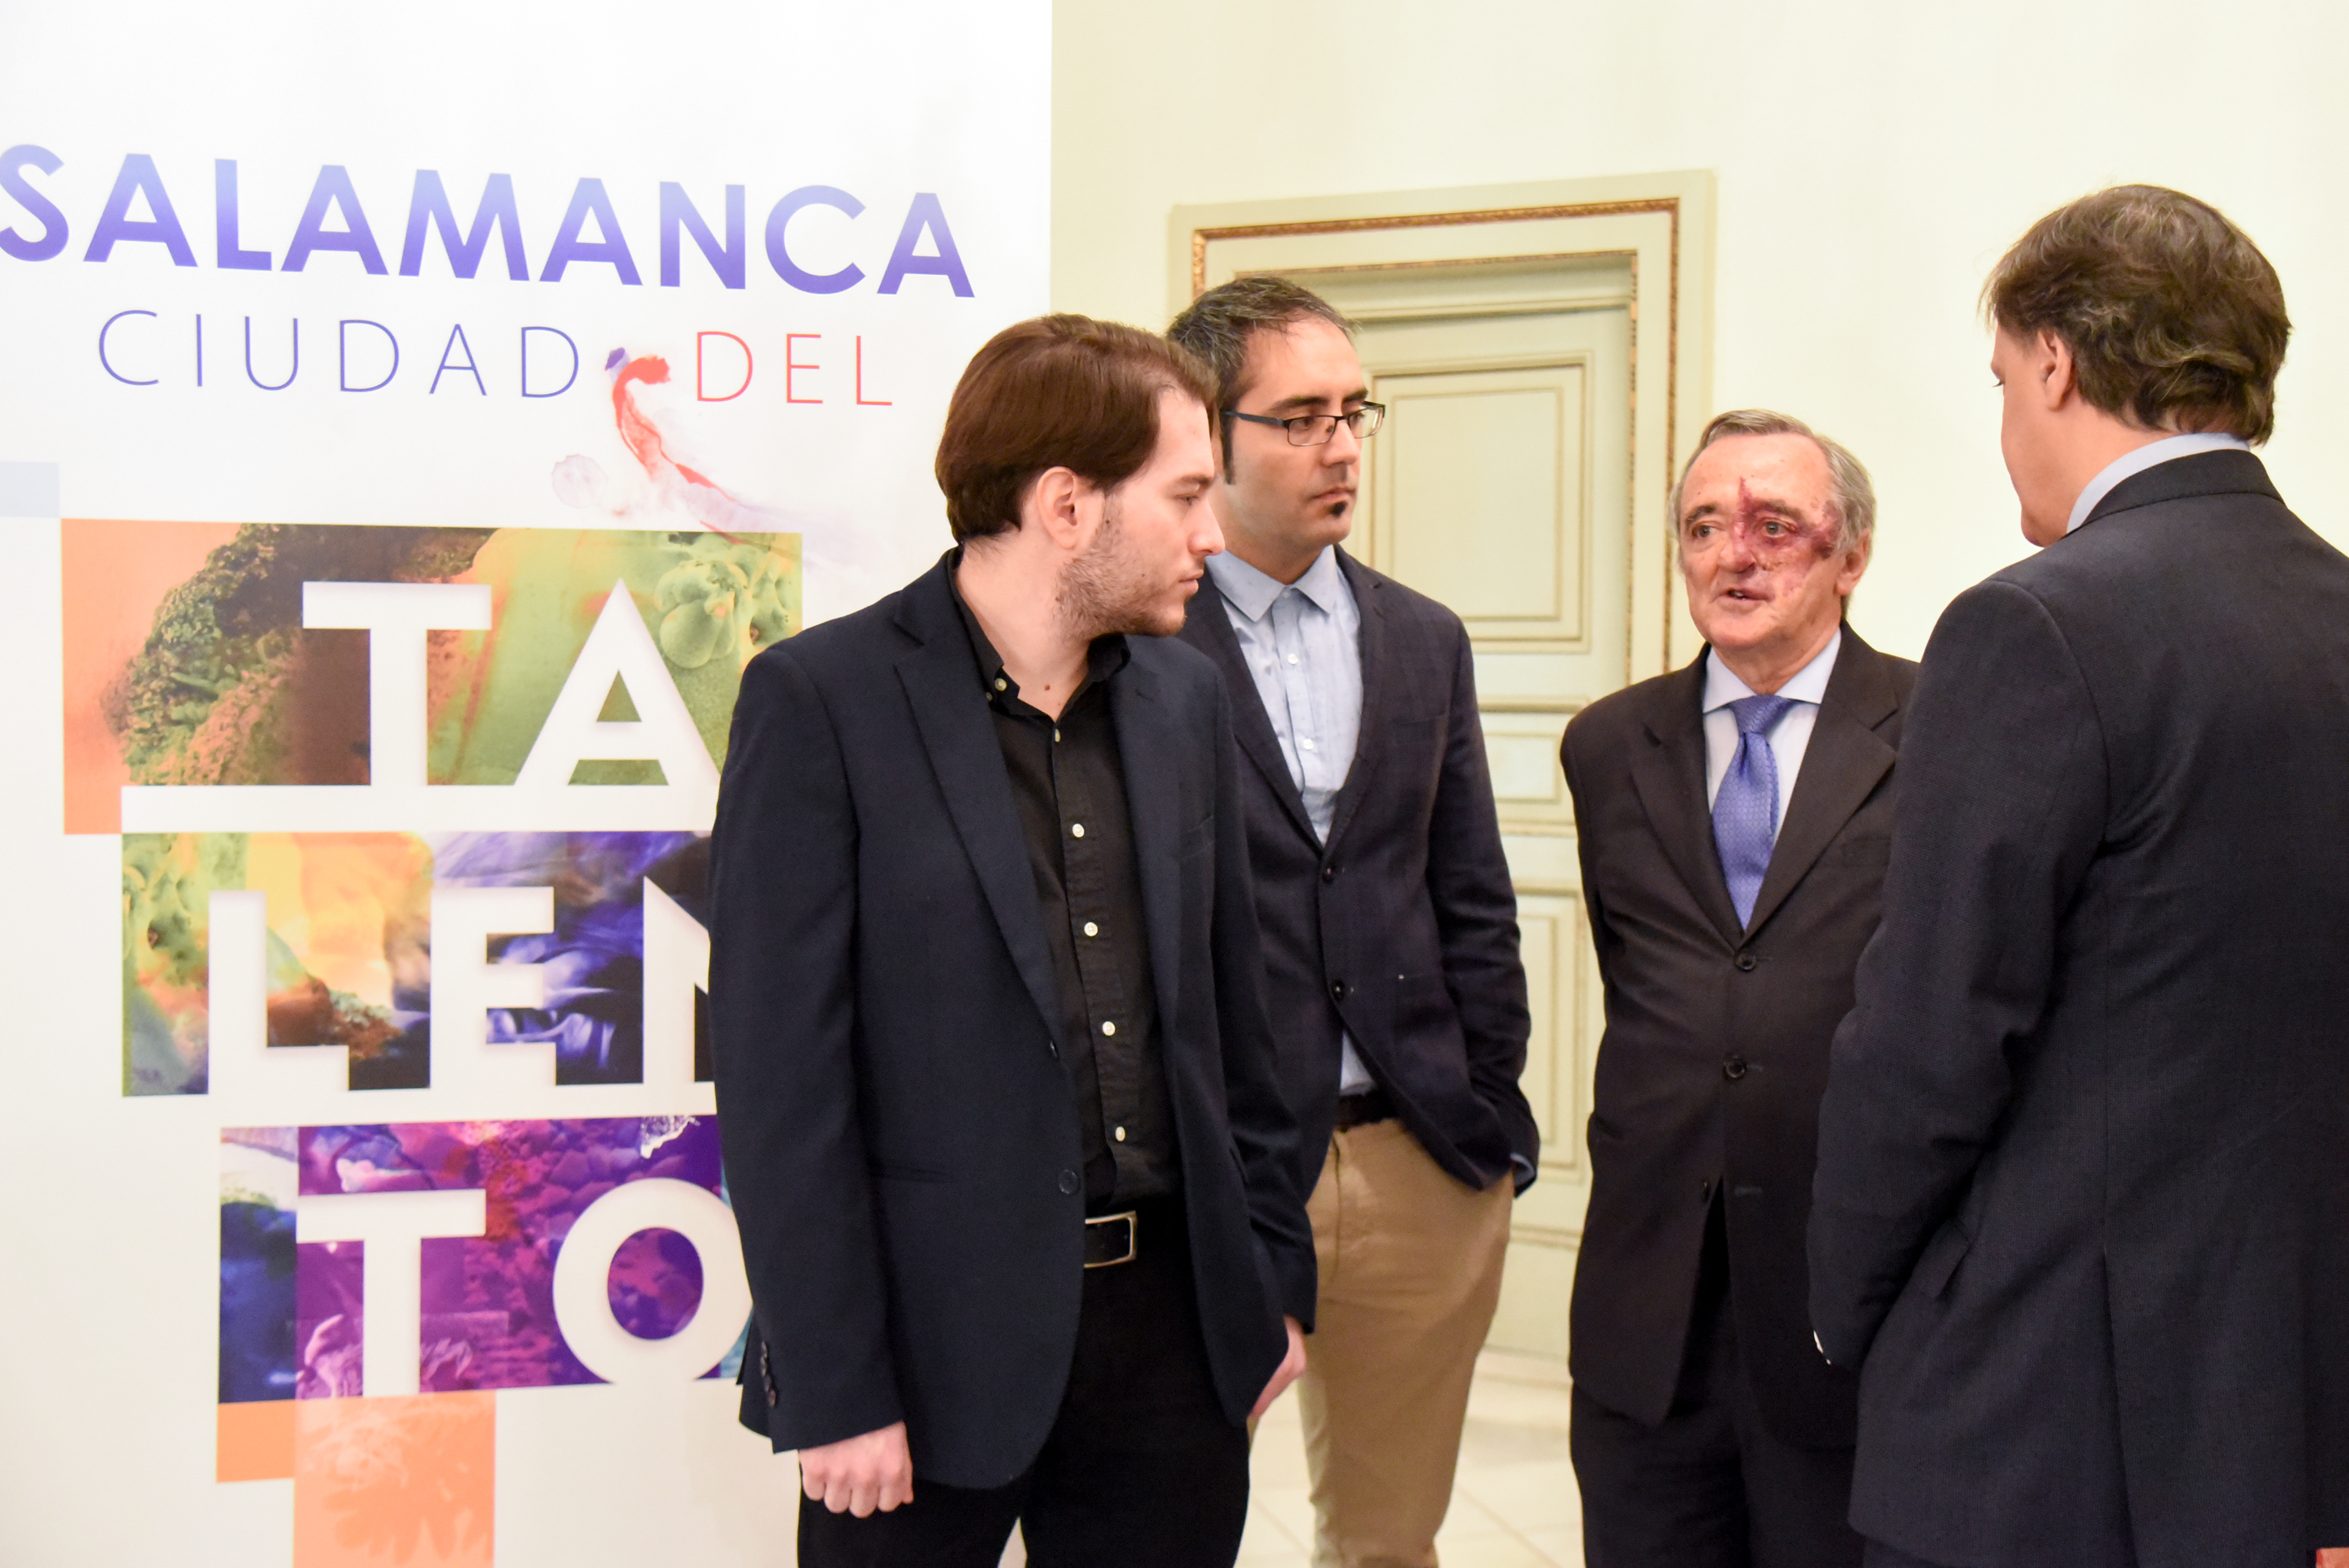 La Universidad de Salamanca reafirma su compromiso con el programa de atracción de jóvenes investigadores impulsado por el Ayuntamiento